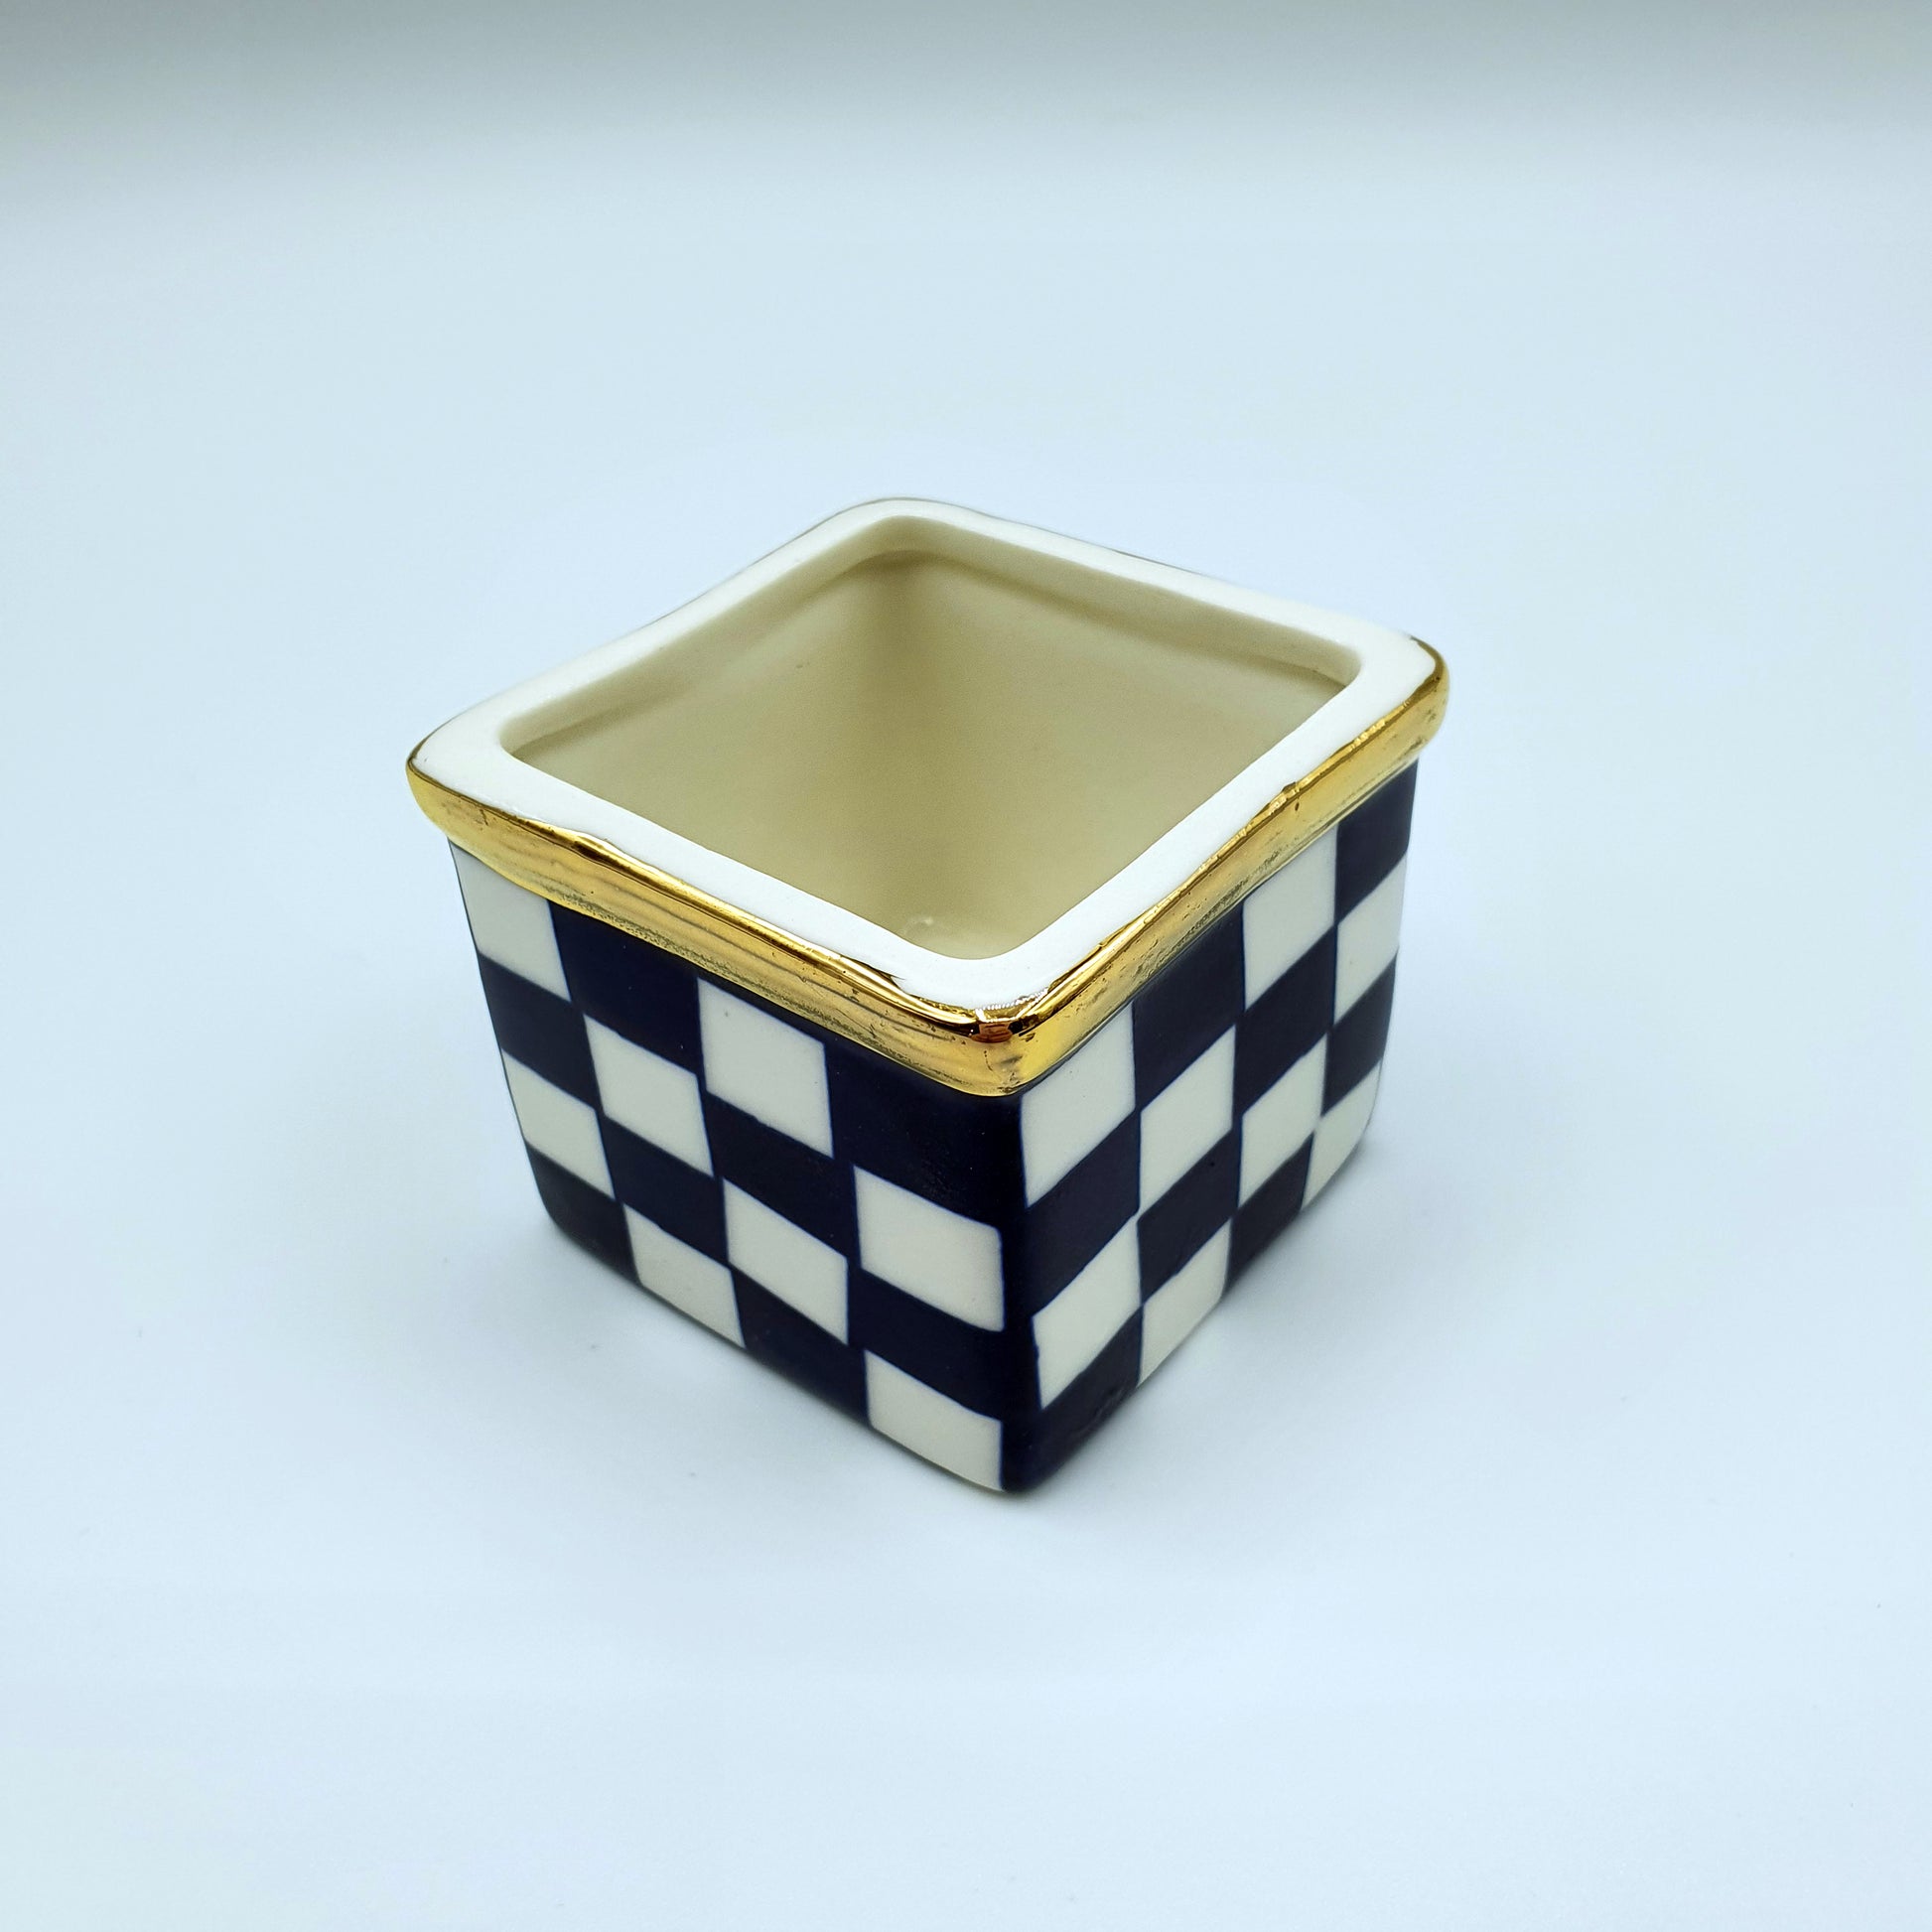 3 Japanese Ceramics + Indigo Dye Coaster Set